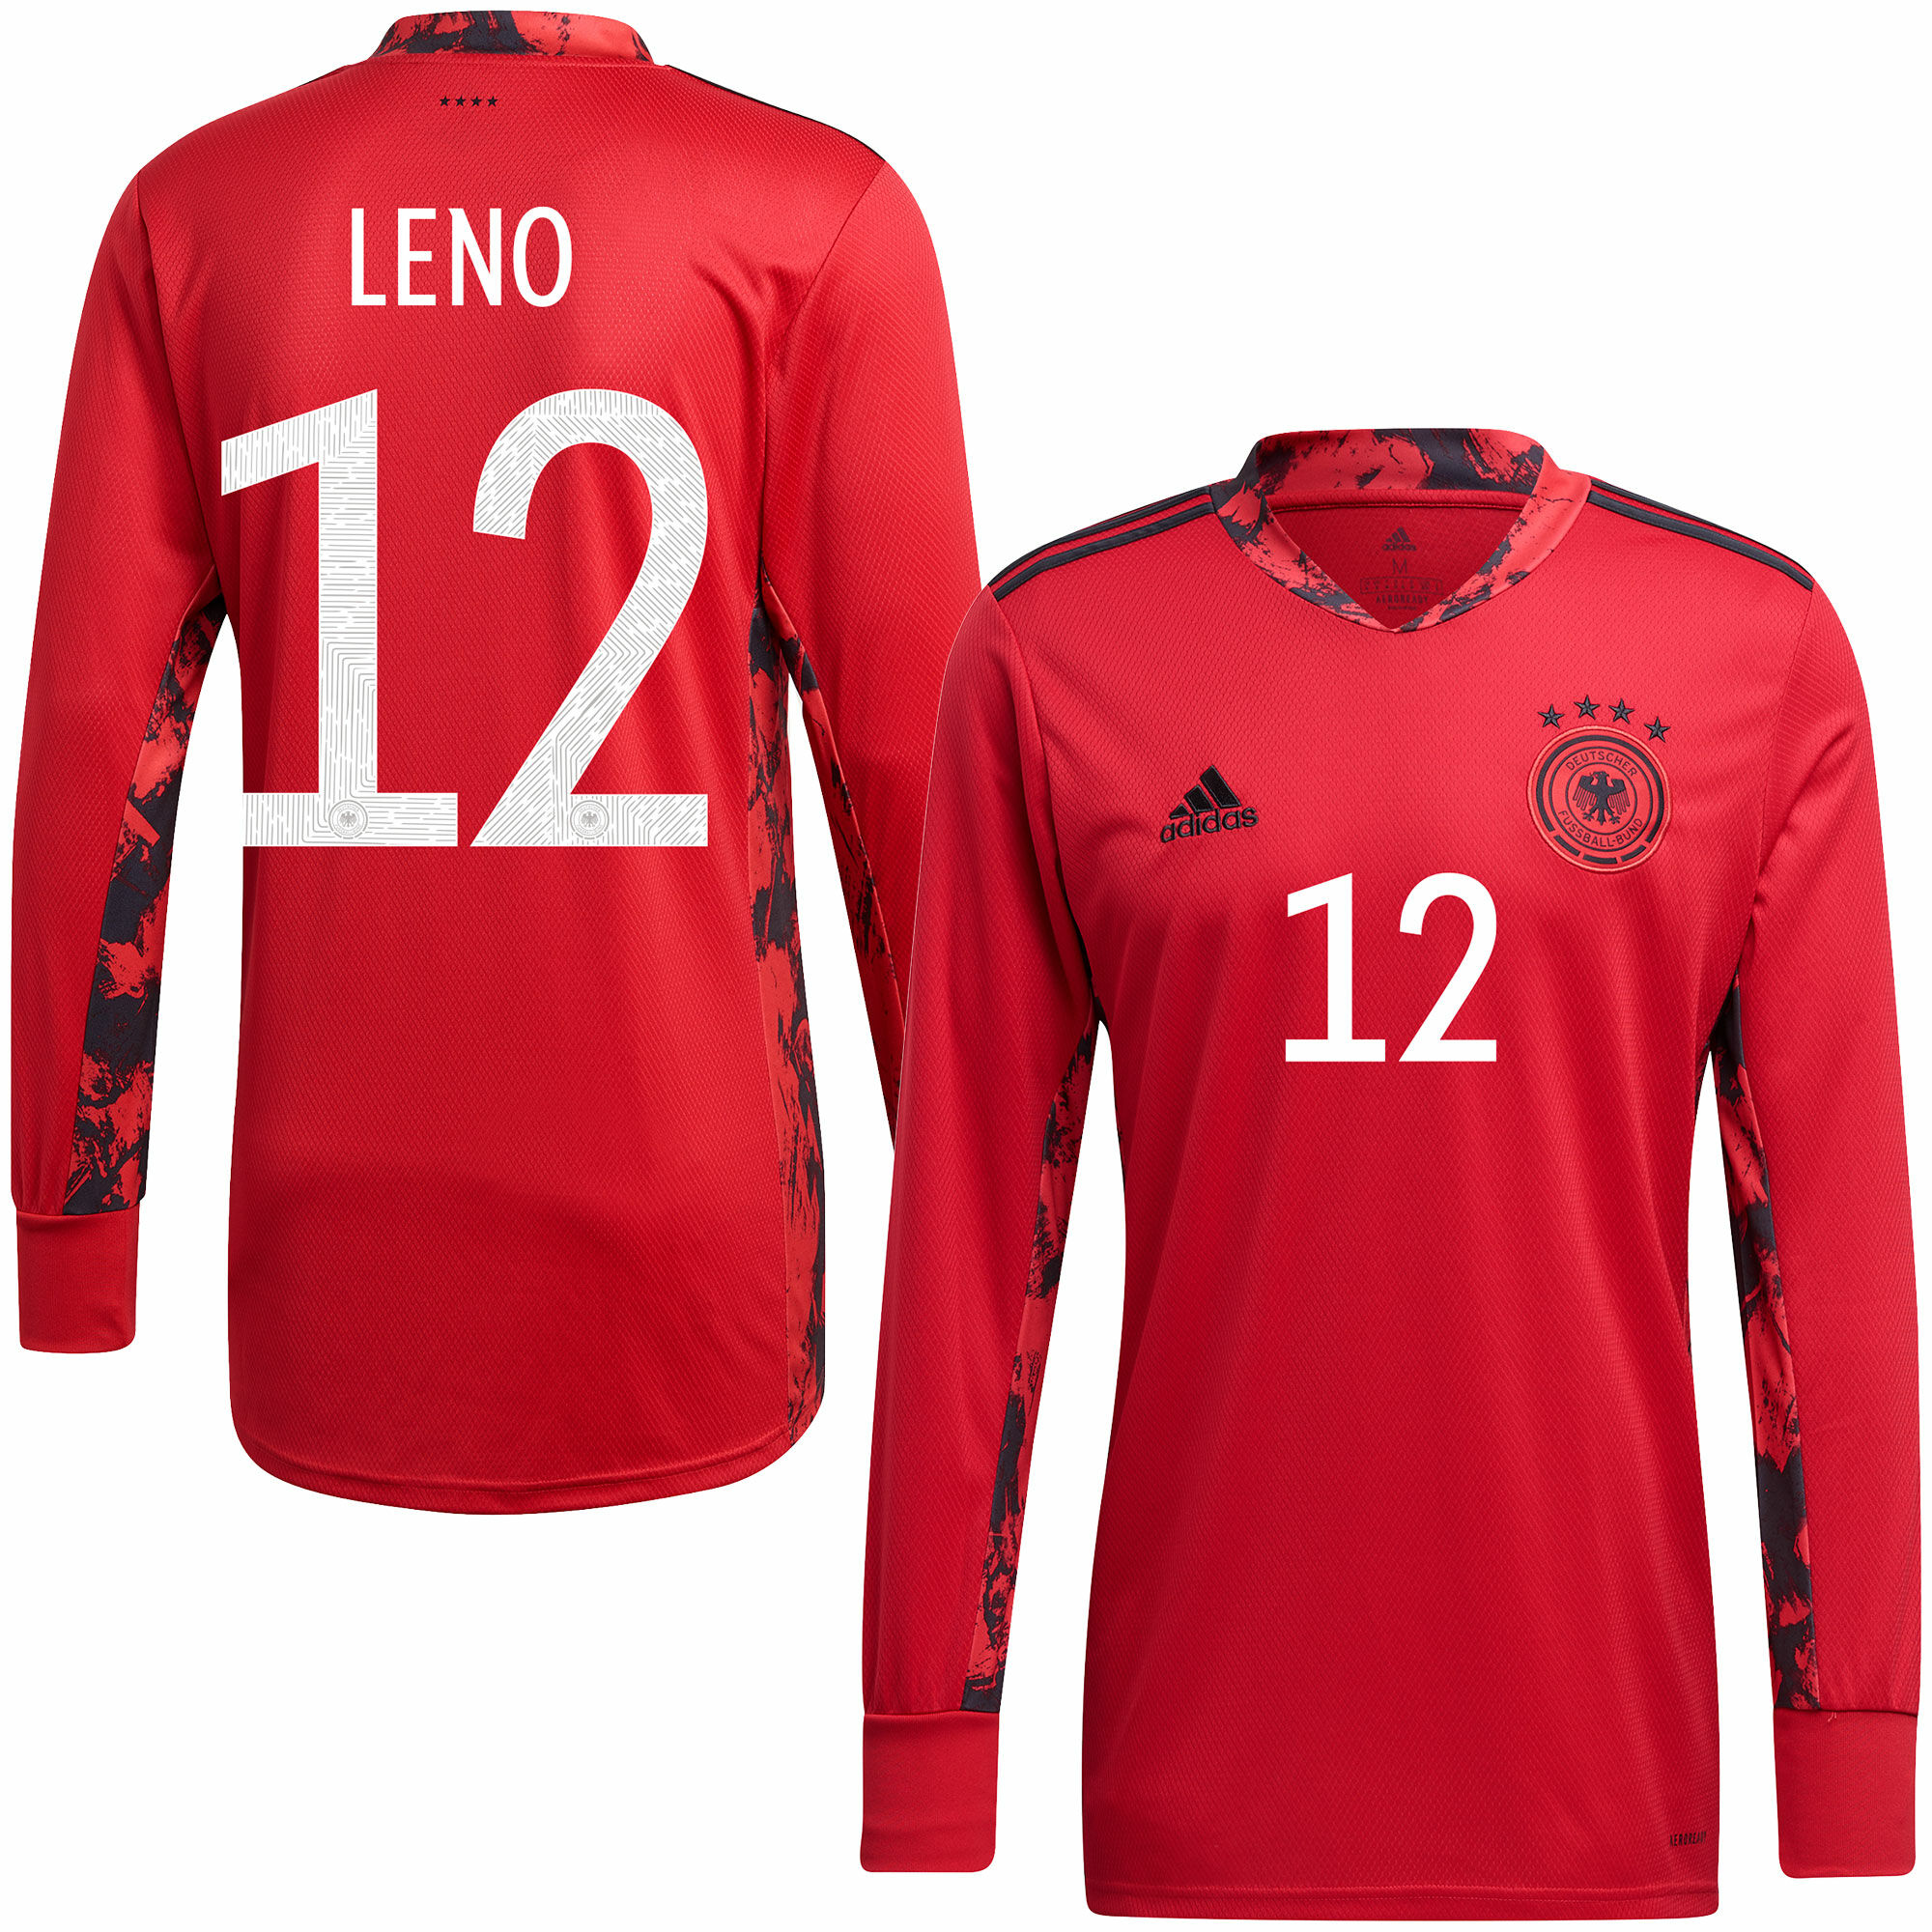 Německo - Dres fotbalový brankářský - sezóna 2020/21, domácí, číslo 12, červený, Bernd Leno